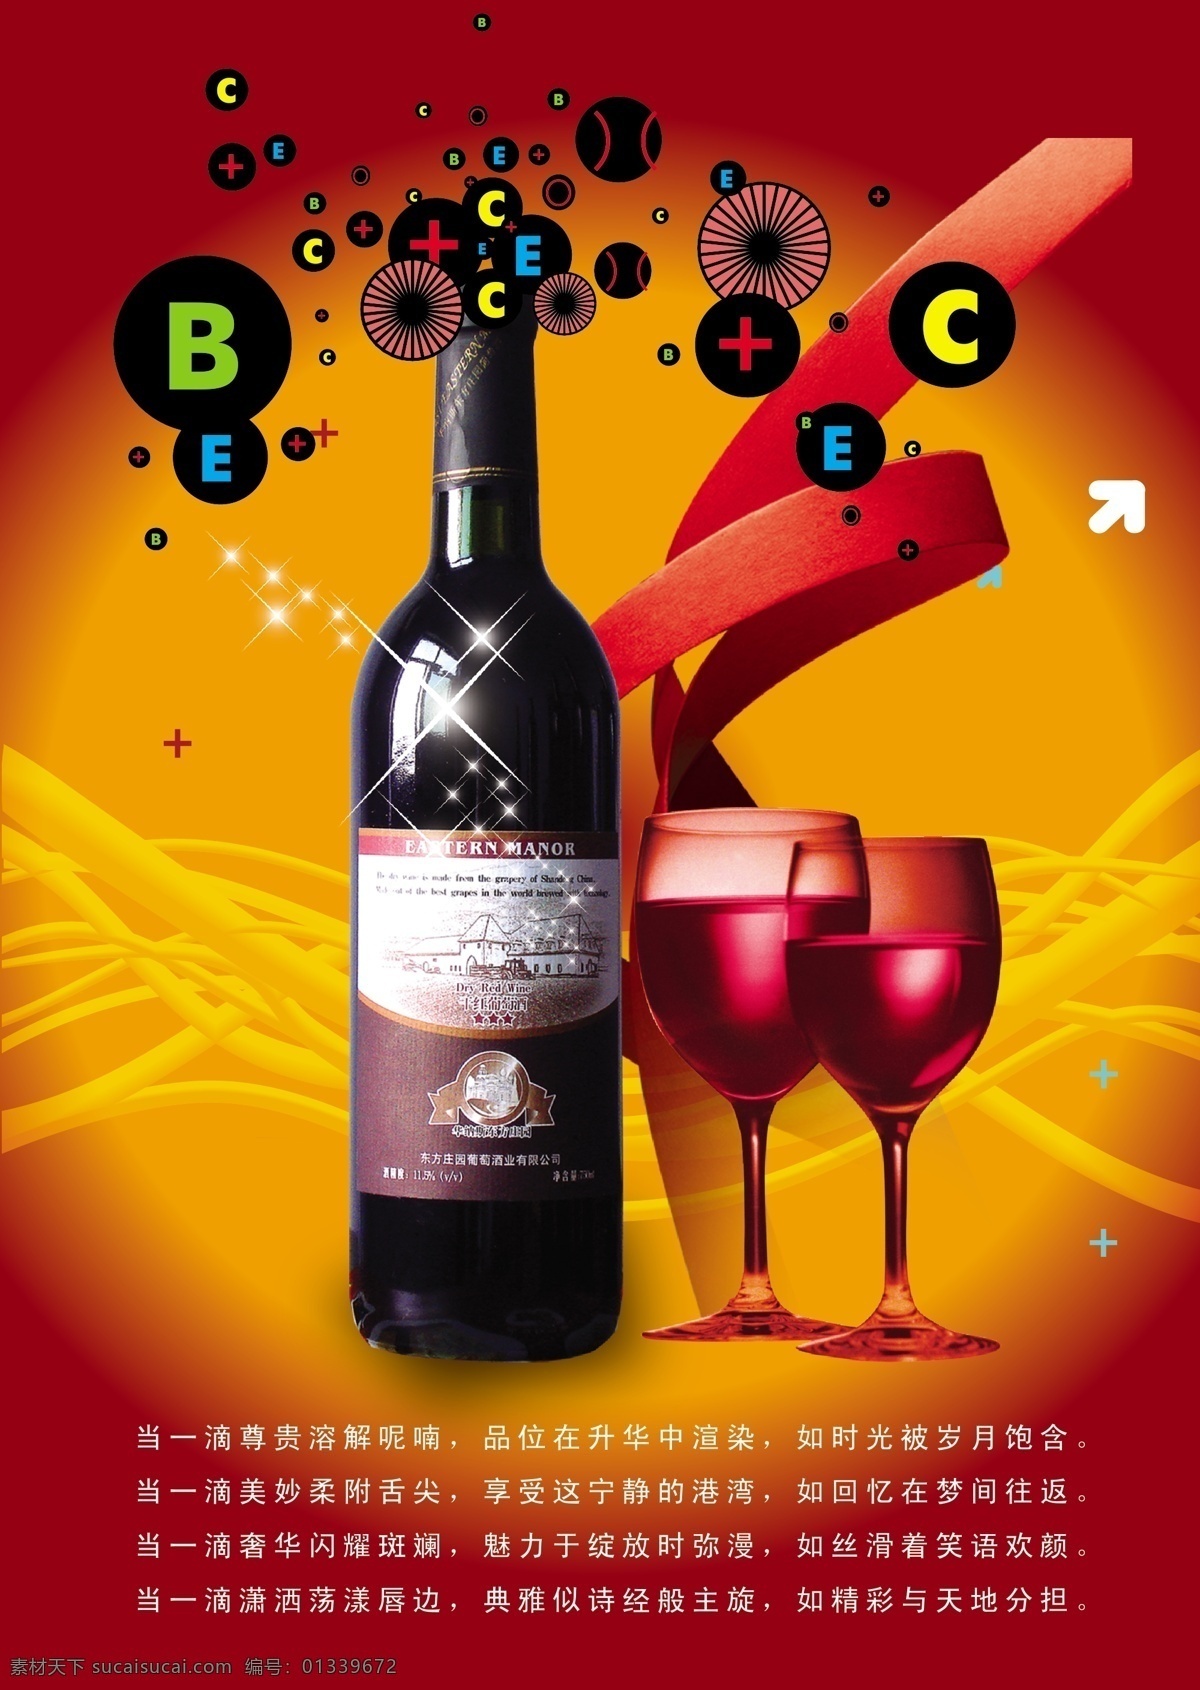 红酒 广告 缤纷色彩 红酒广告 红酒主题 唯美酒杯 原创设计 原创海报